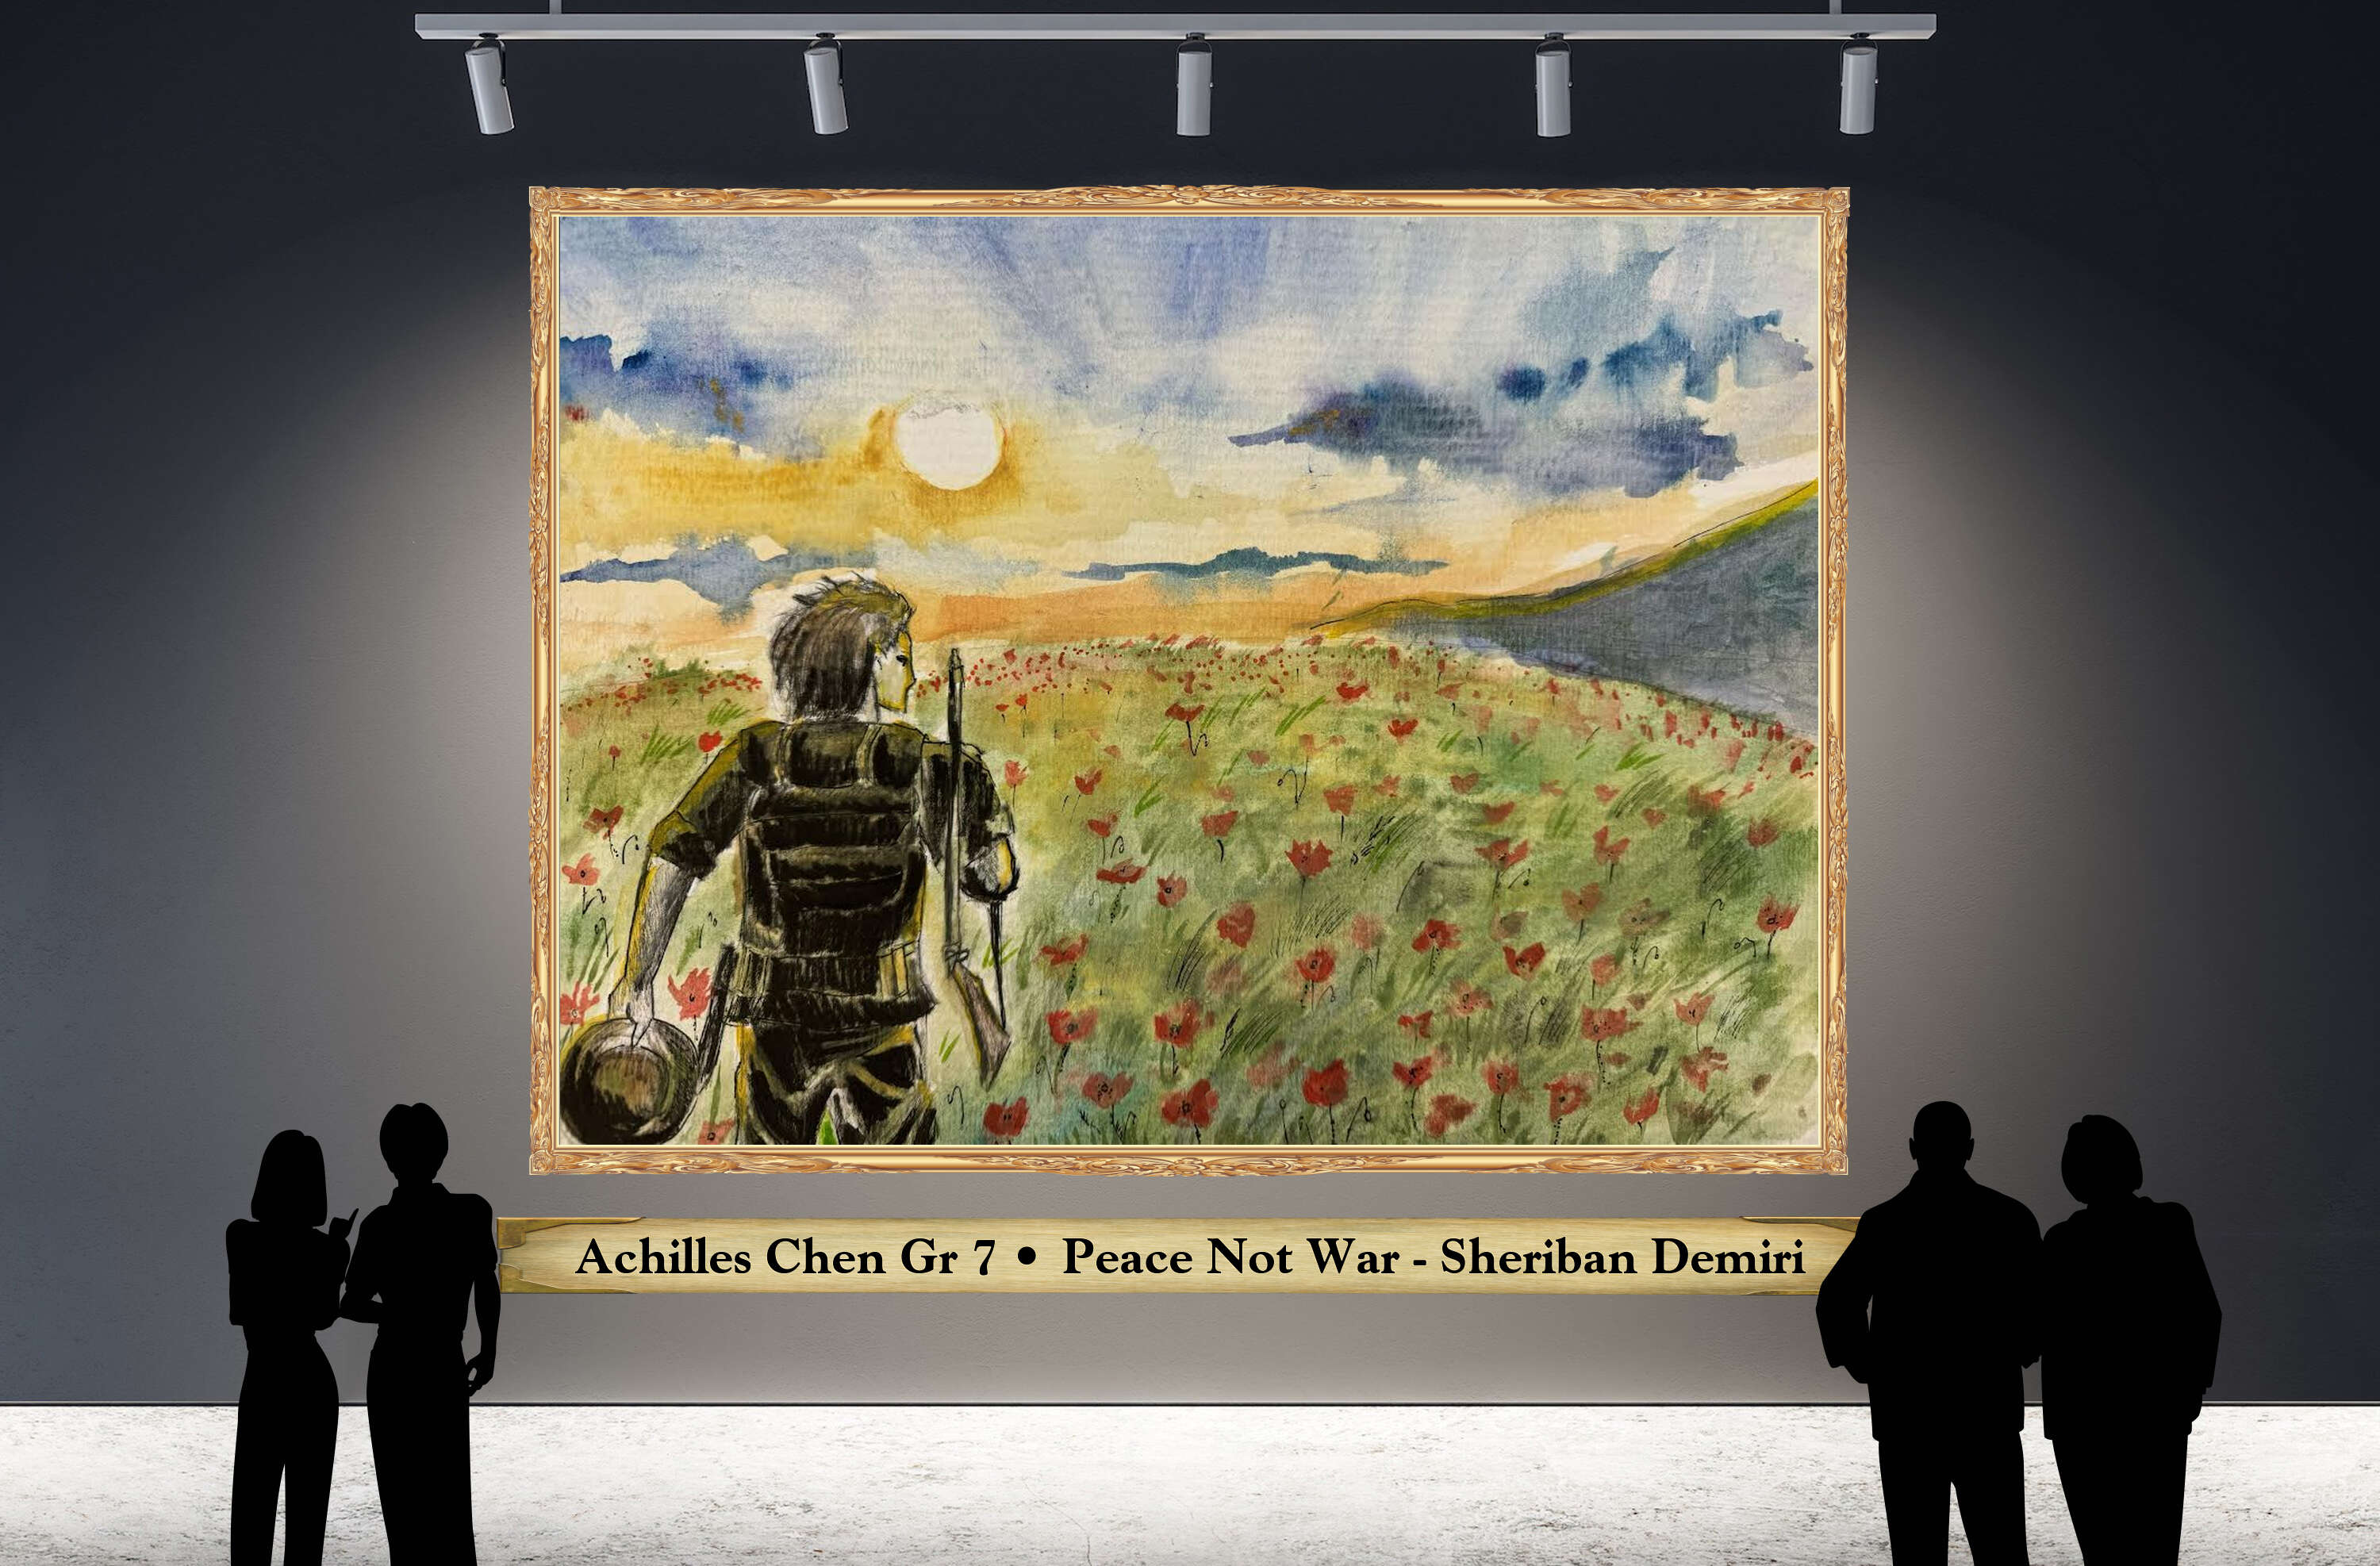 Achilles Chen Gr 7 • Peace Not War - Sheriban Demiri